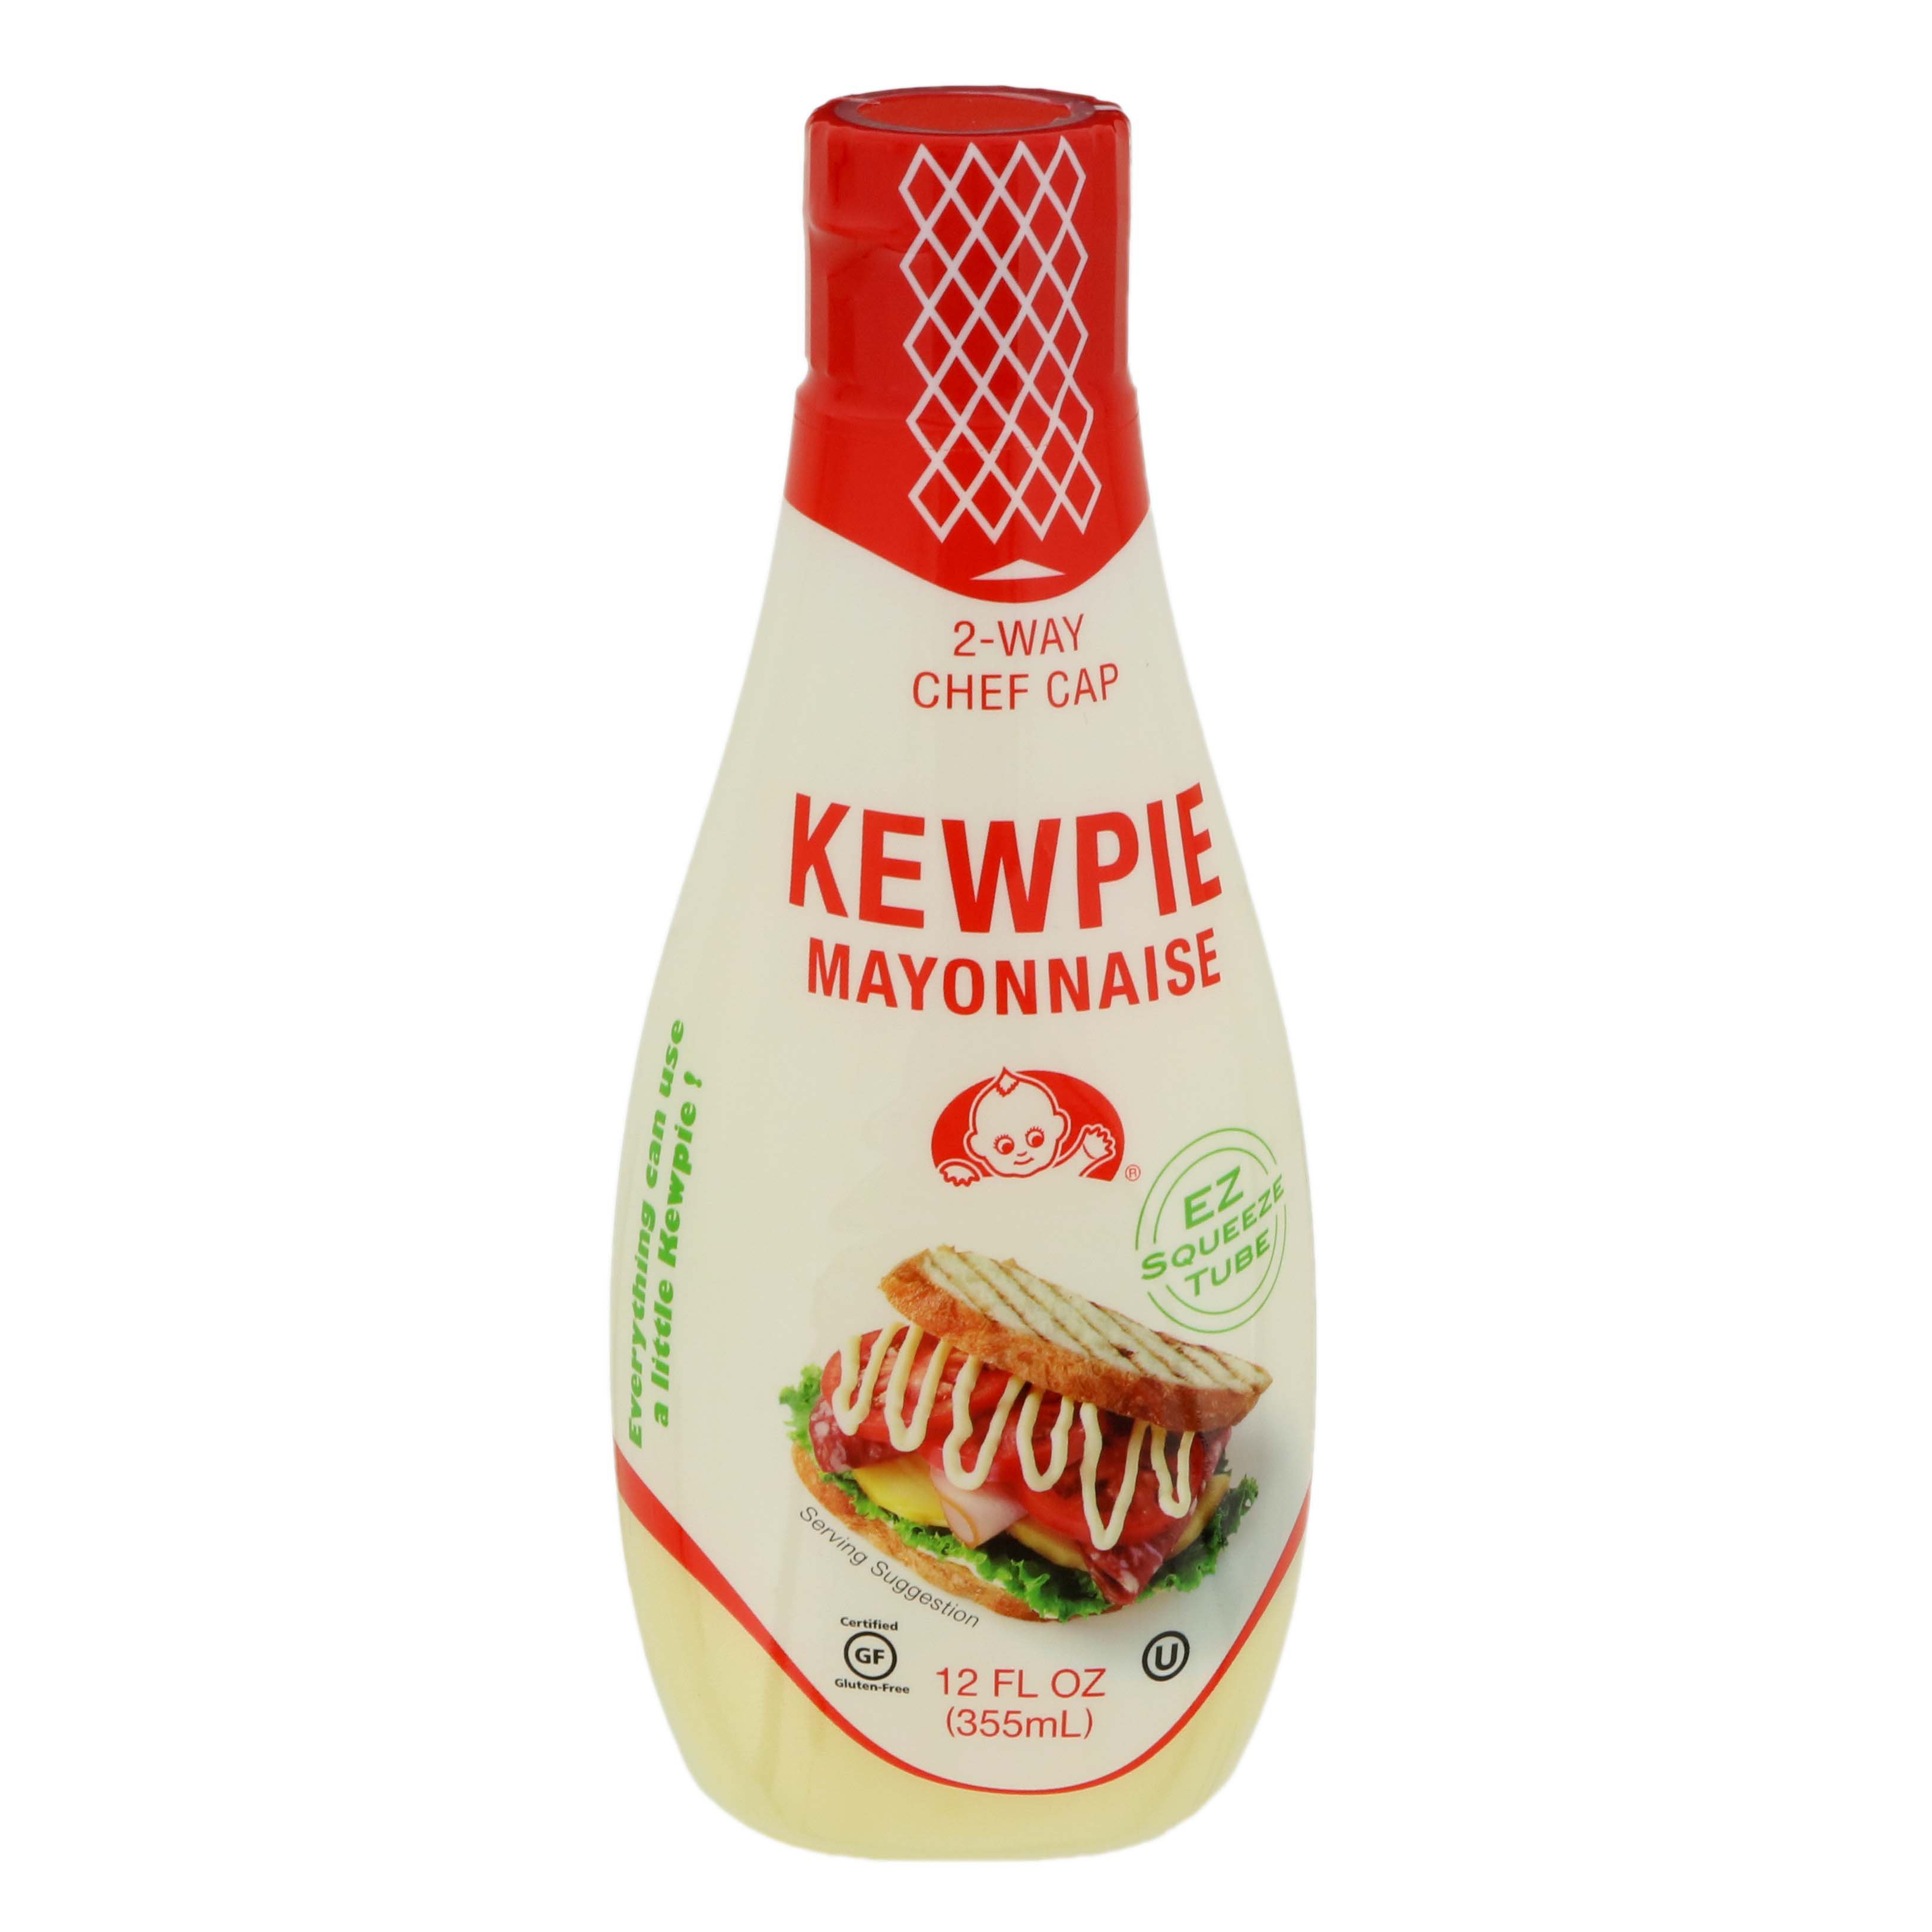 Kewpie sauce